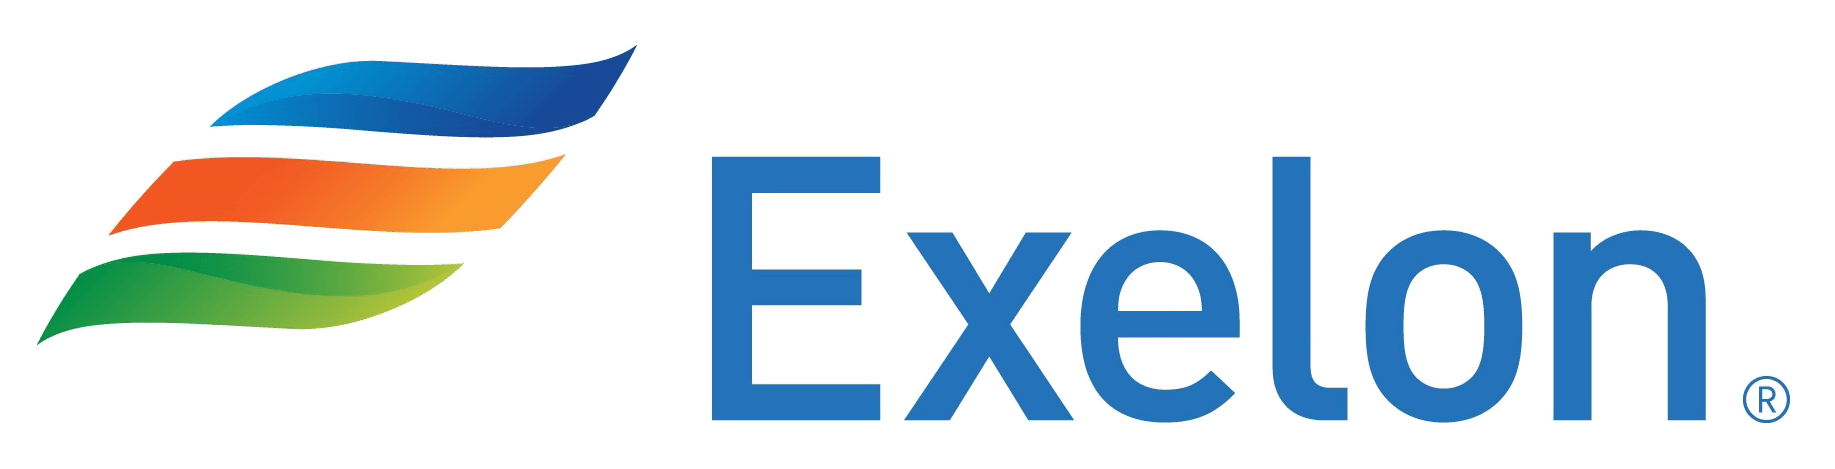 Exelon Corp Logo - Exelon Logos